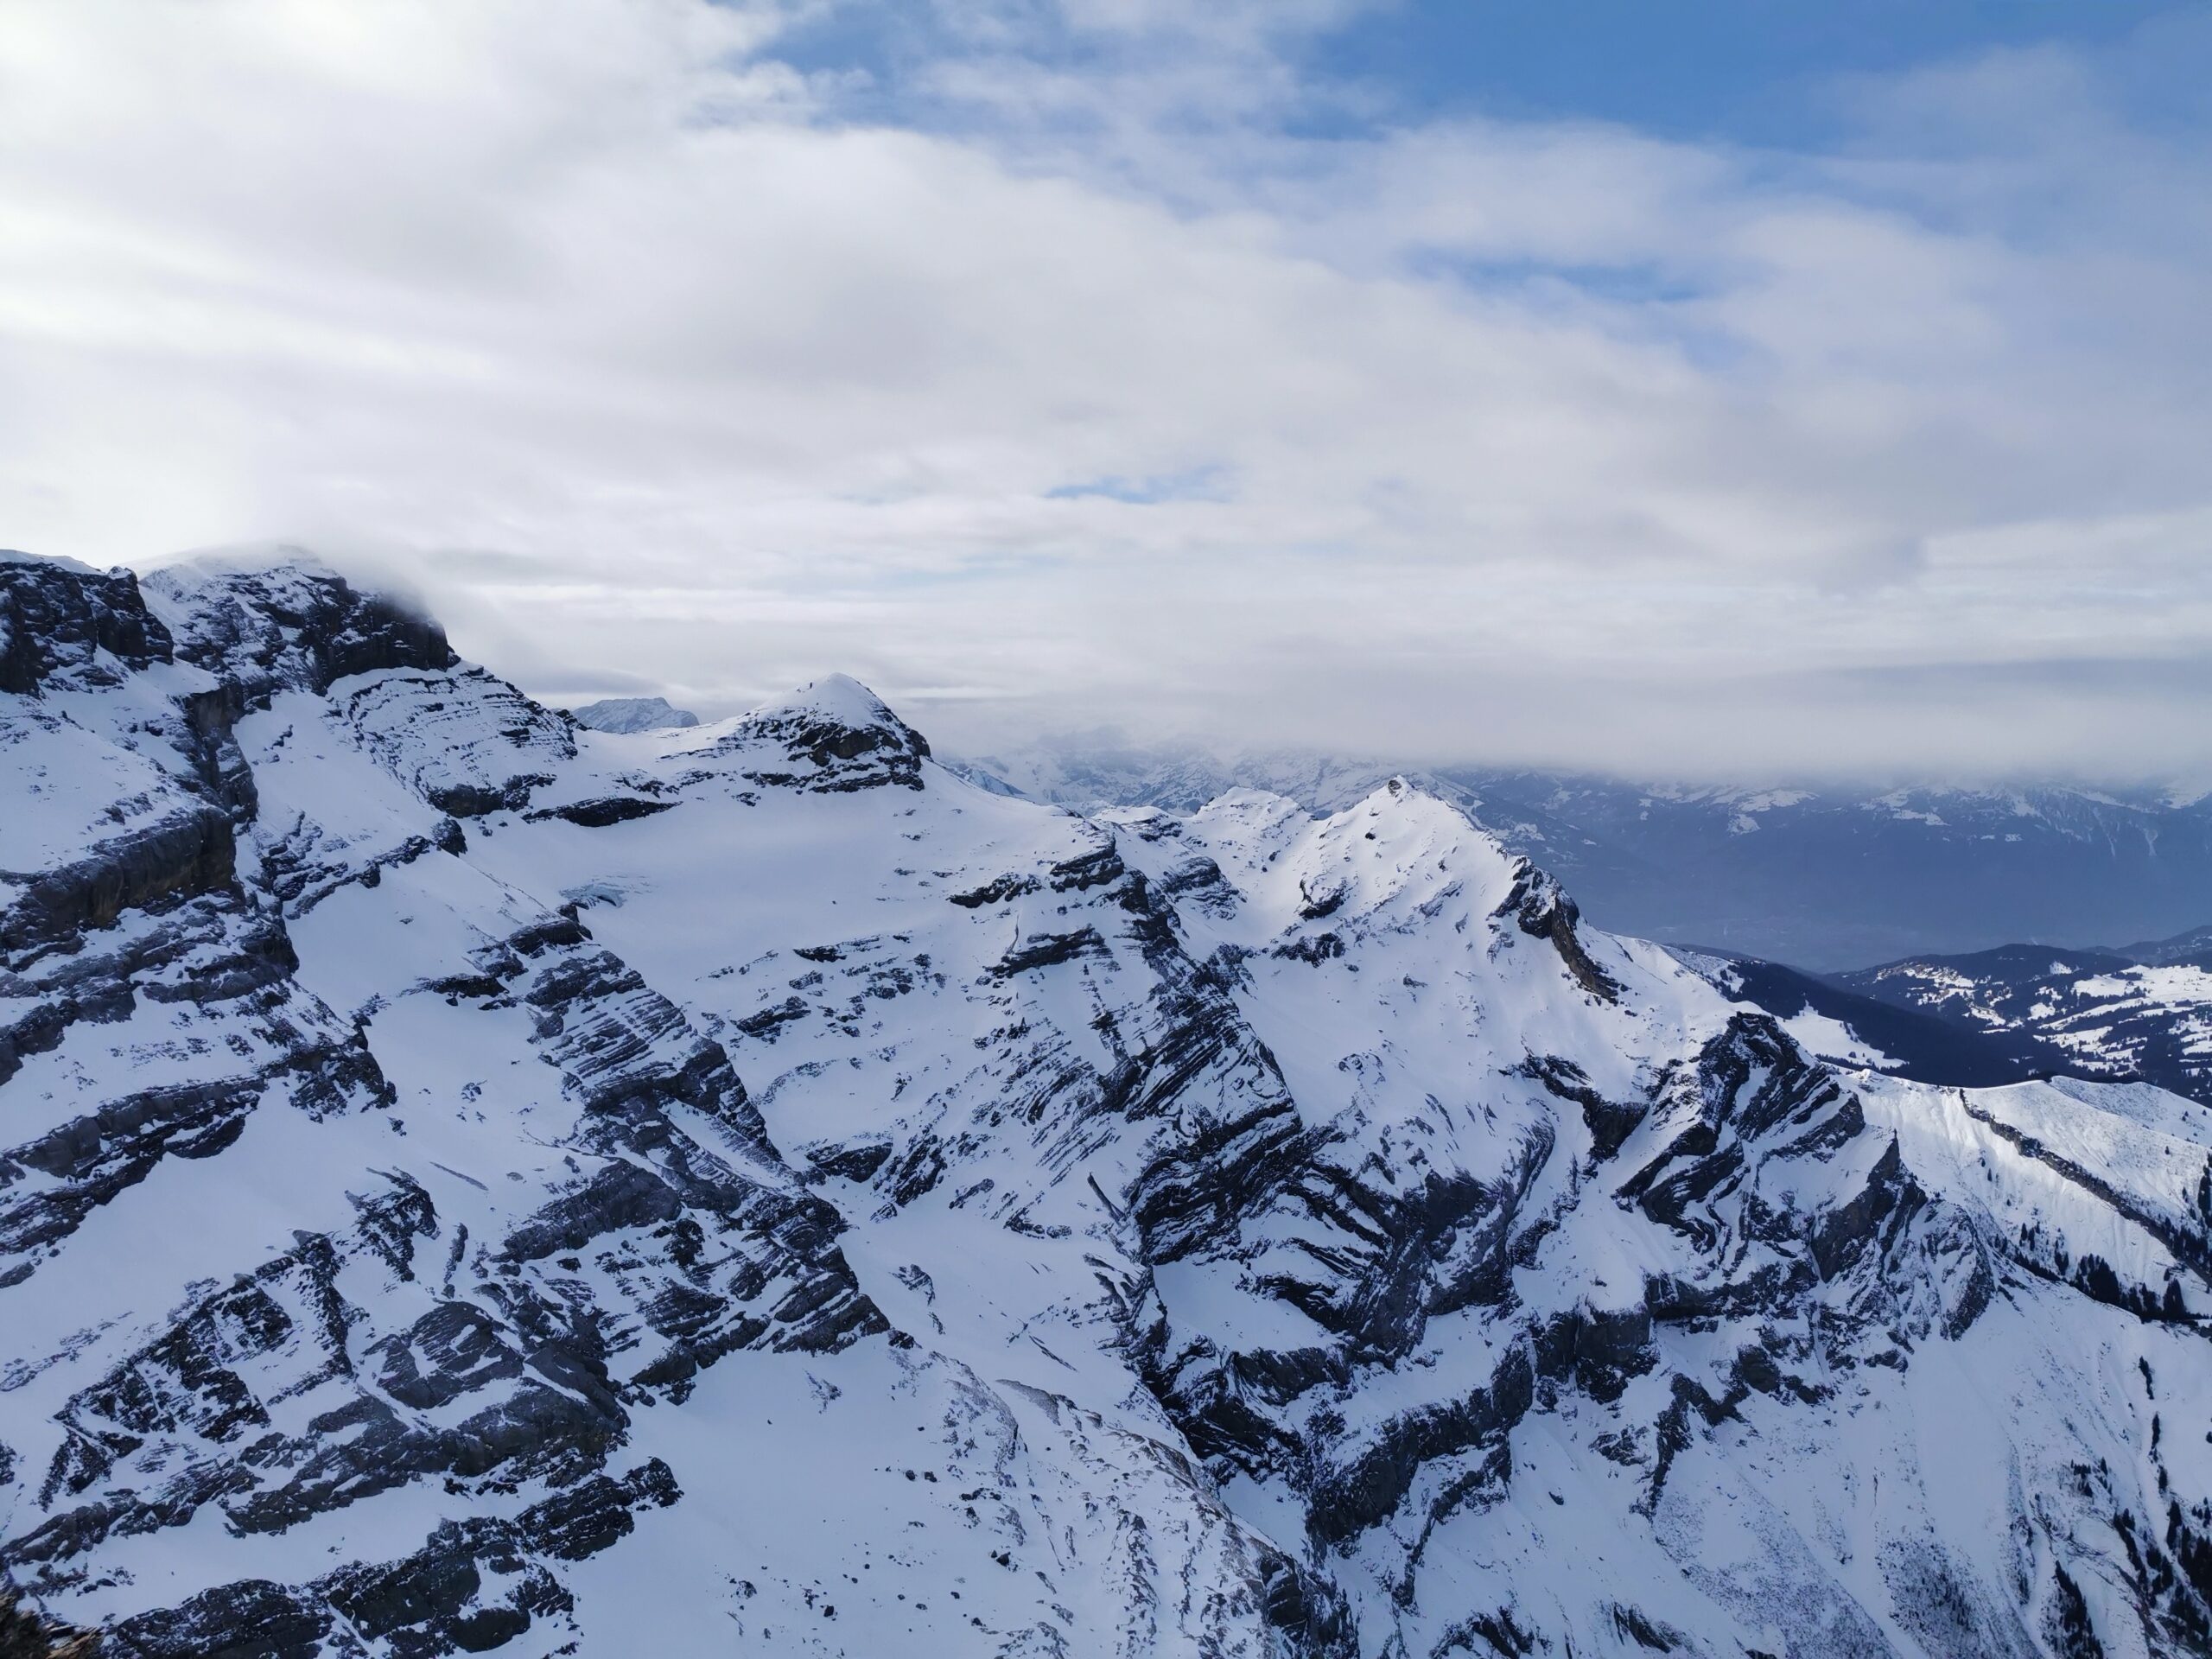 Glacier 3000 - Scex Rouge, Ausblick auf die umliegenden Berge